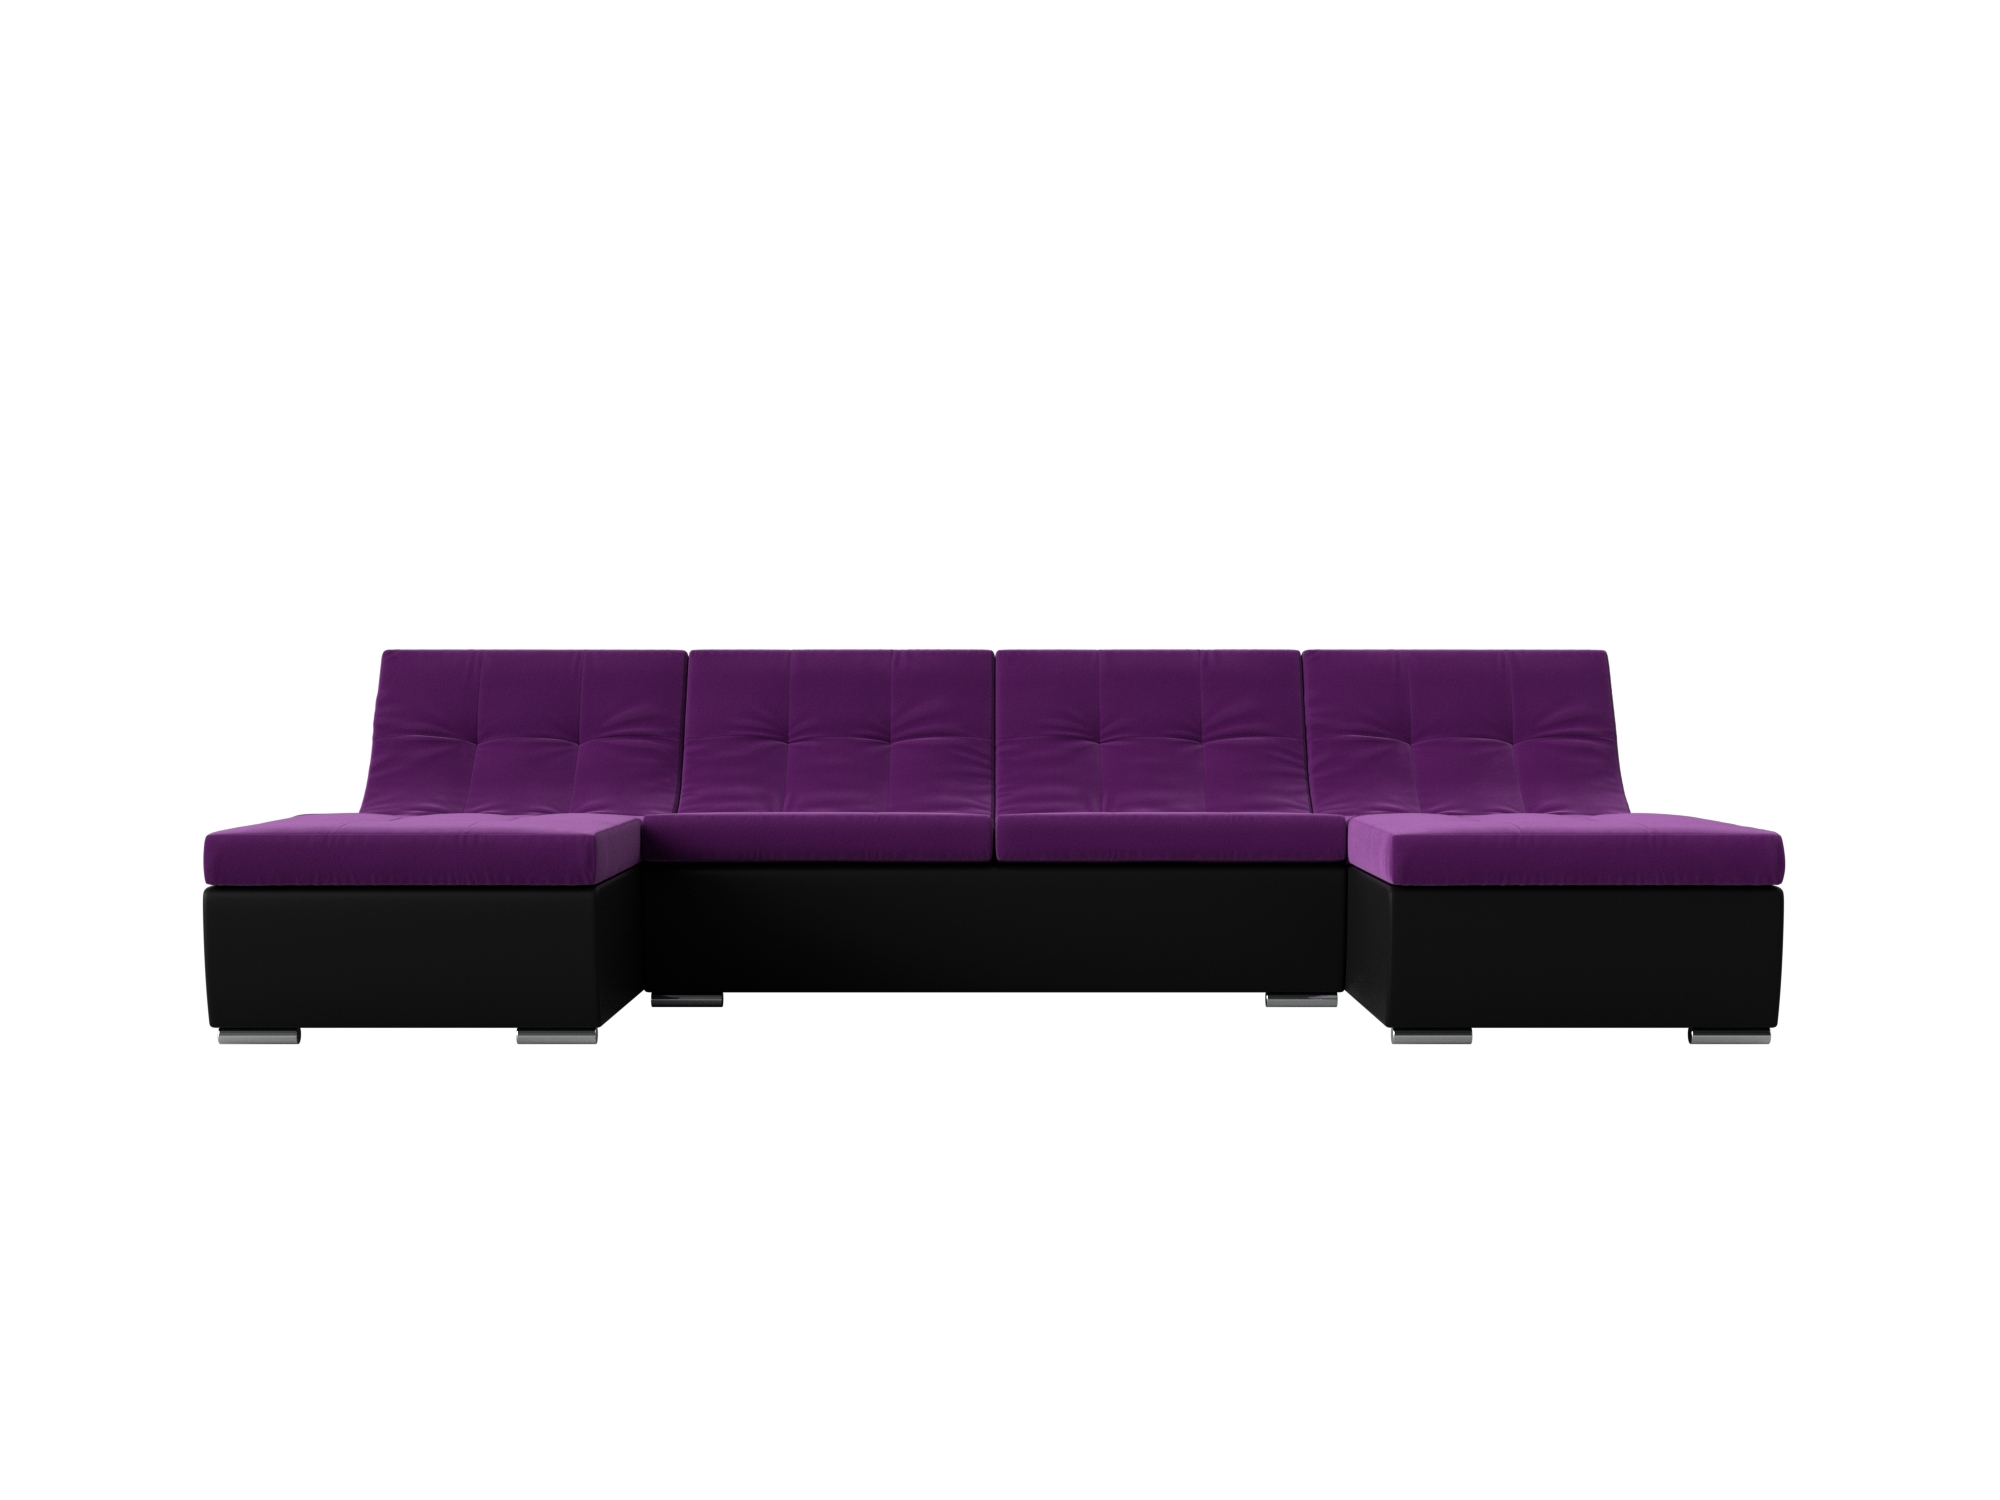 П-образный модульный диван Монреаль MebelVia Фиолетовый, Черный, Микровельвет, Экокожа, ЛДСП угловой модульный диван монреаль mebelvia фиолетовый черный микровельвет экокожа лдсп